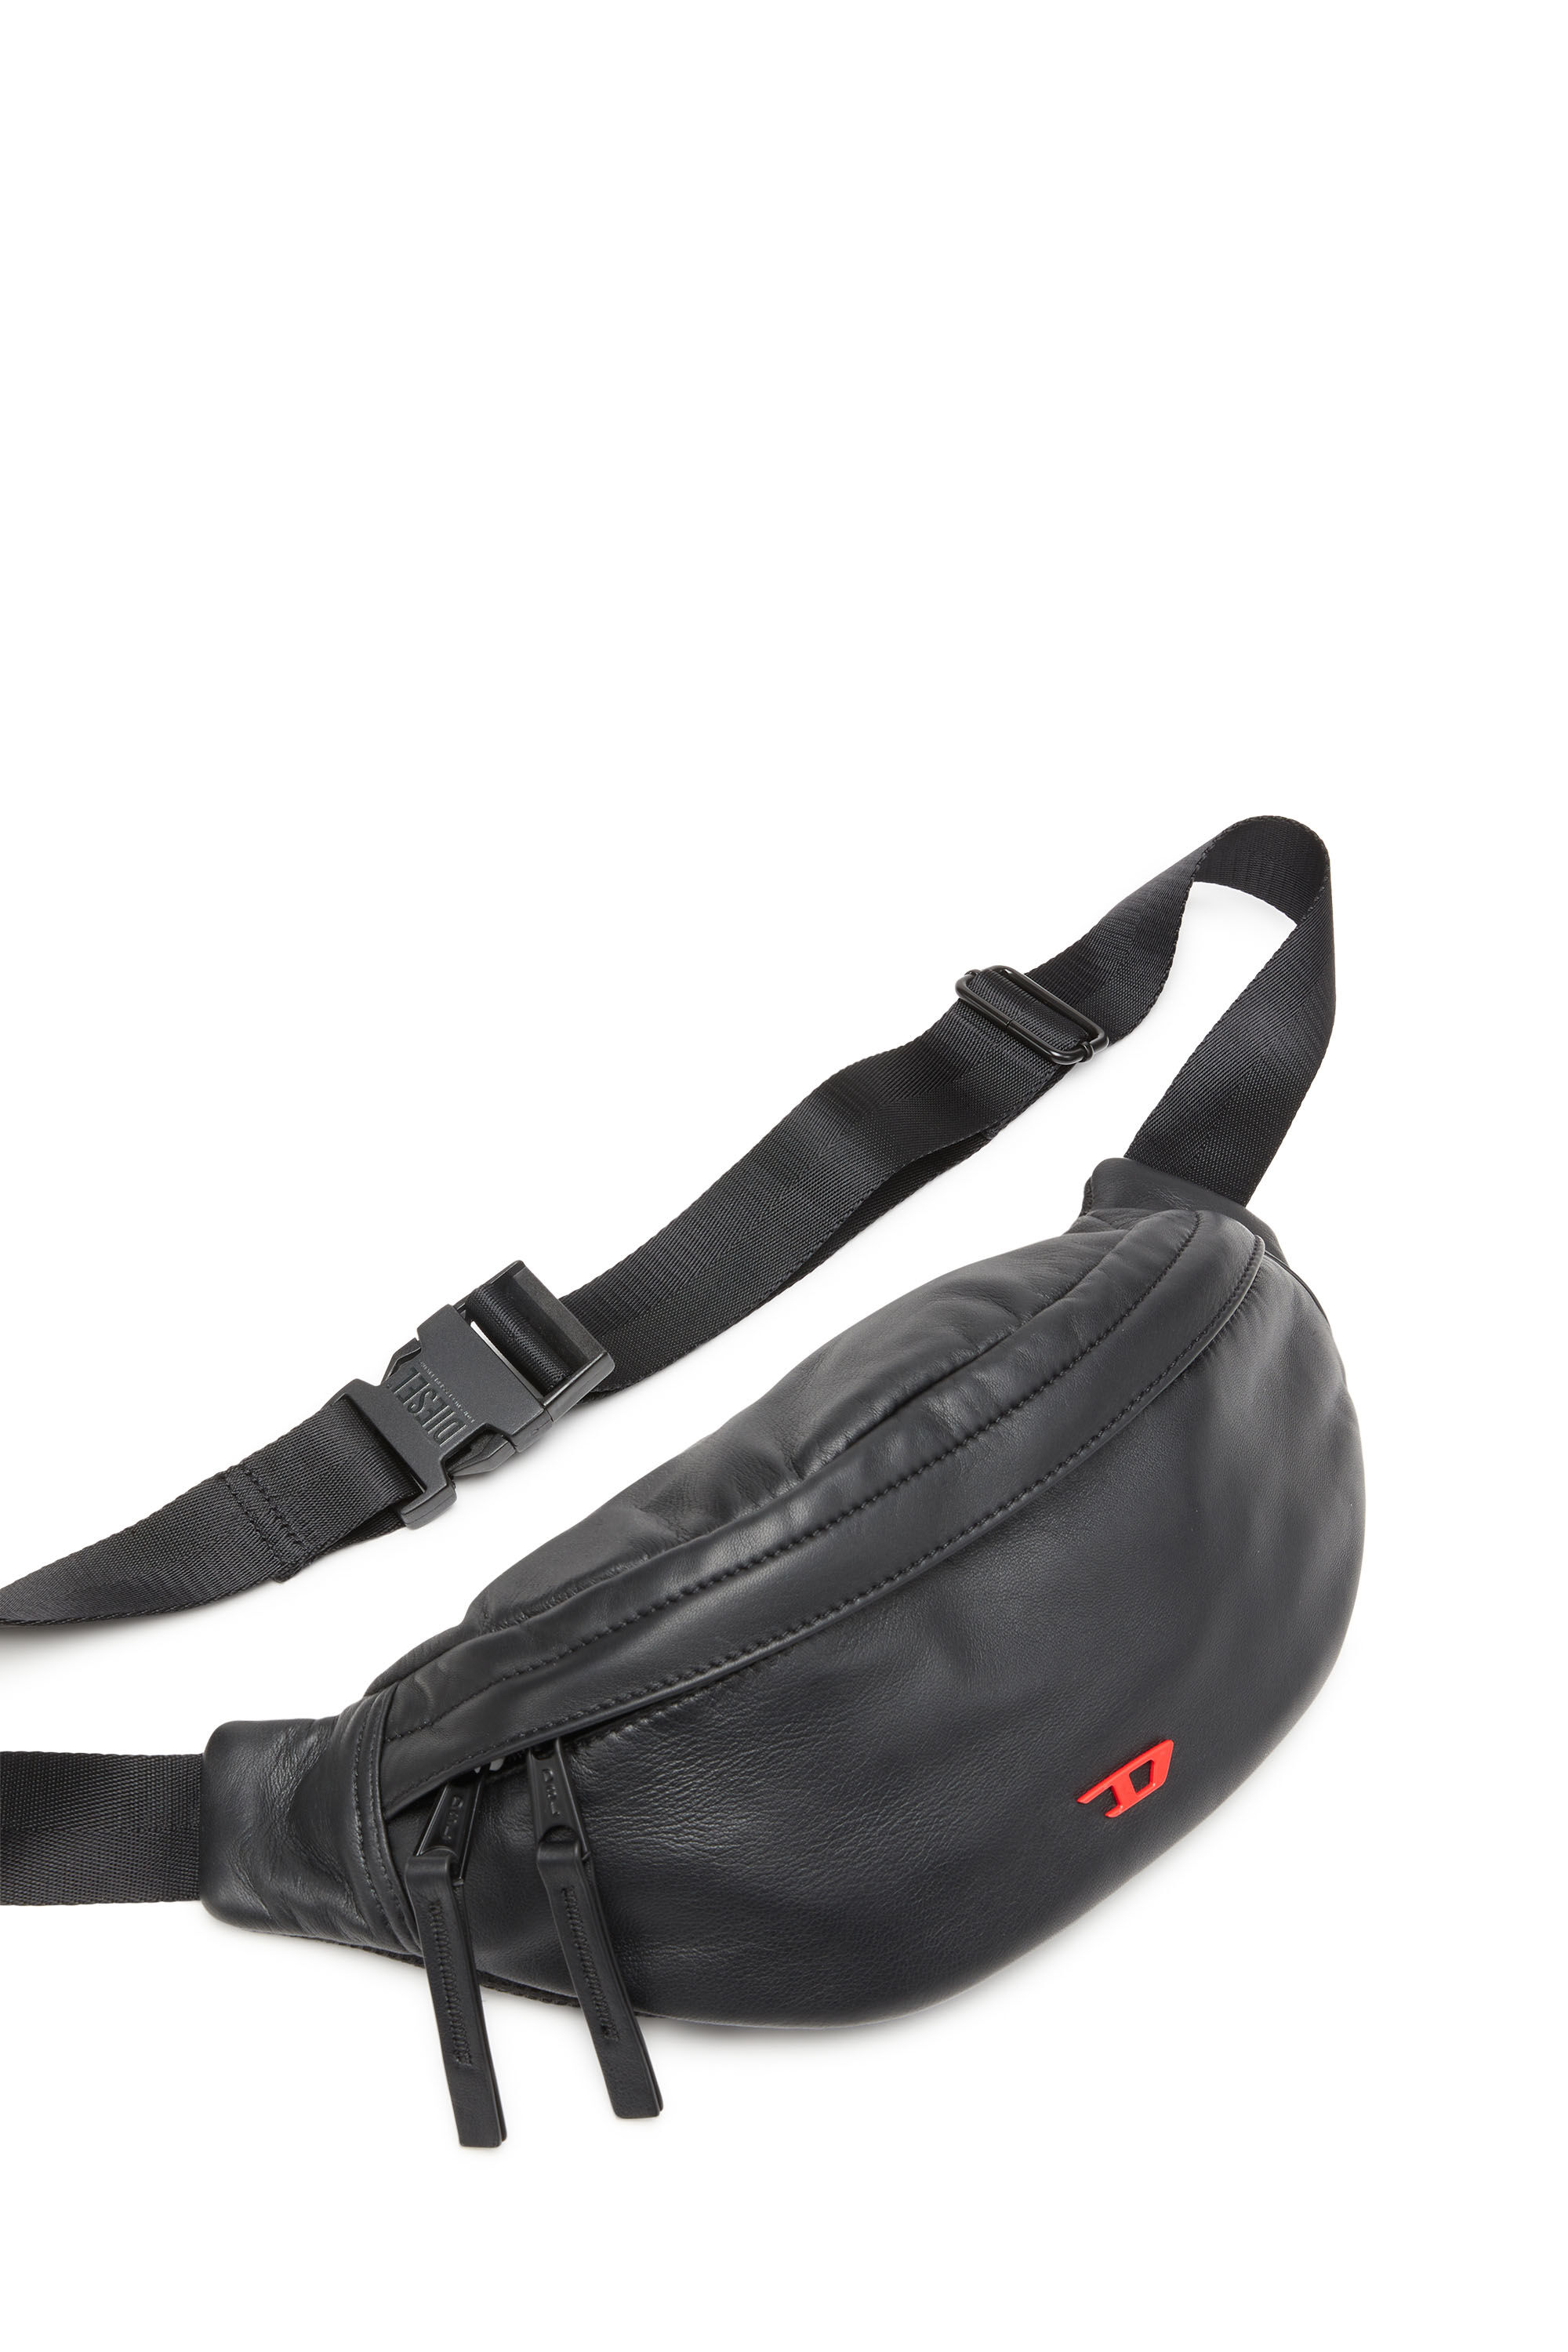 RAVE BELTBAG Rave Beltbag Belt Bag - Leather belt bag with metal D 